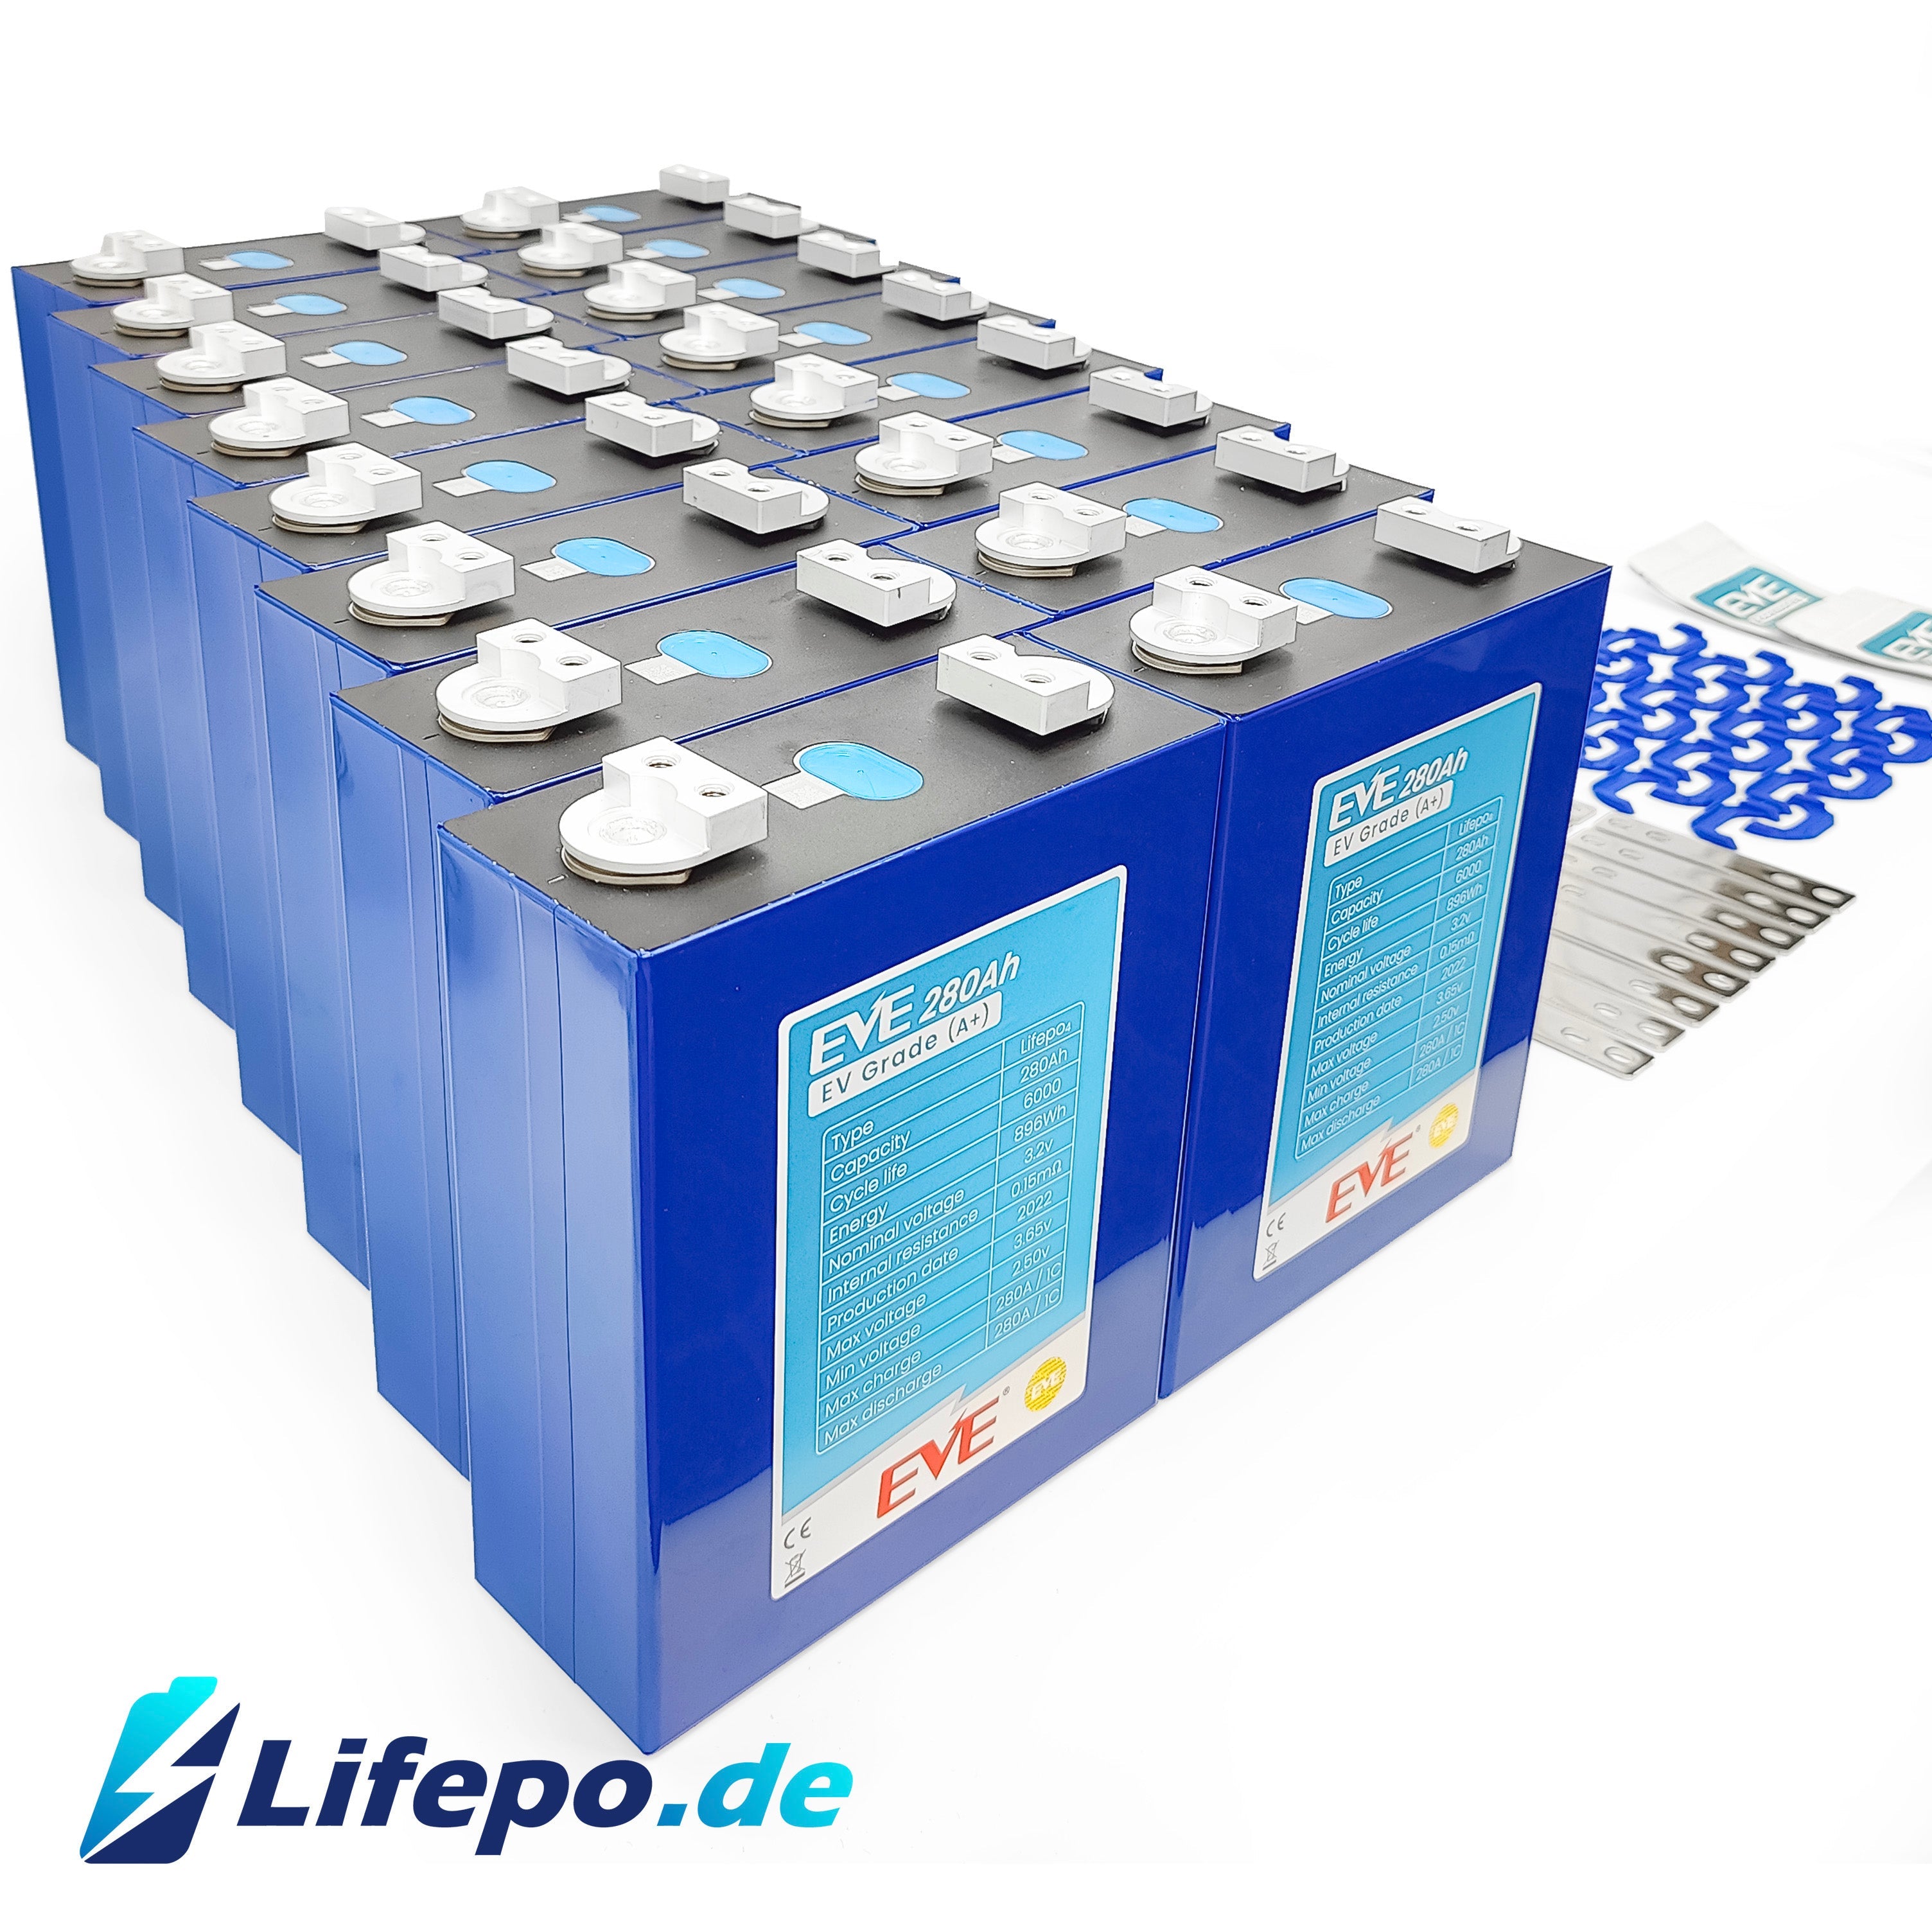 Lifepo.de Lifepo4 Batteriesystem EVE Grade A+ 24V, 16kWh ab € 3804